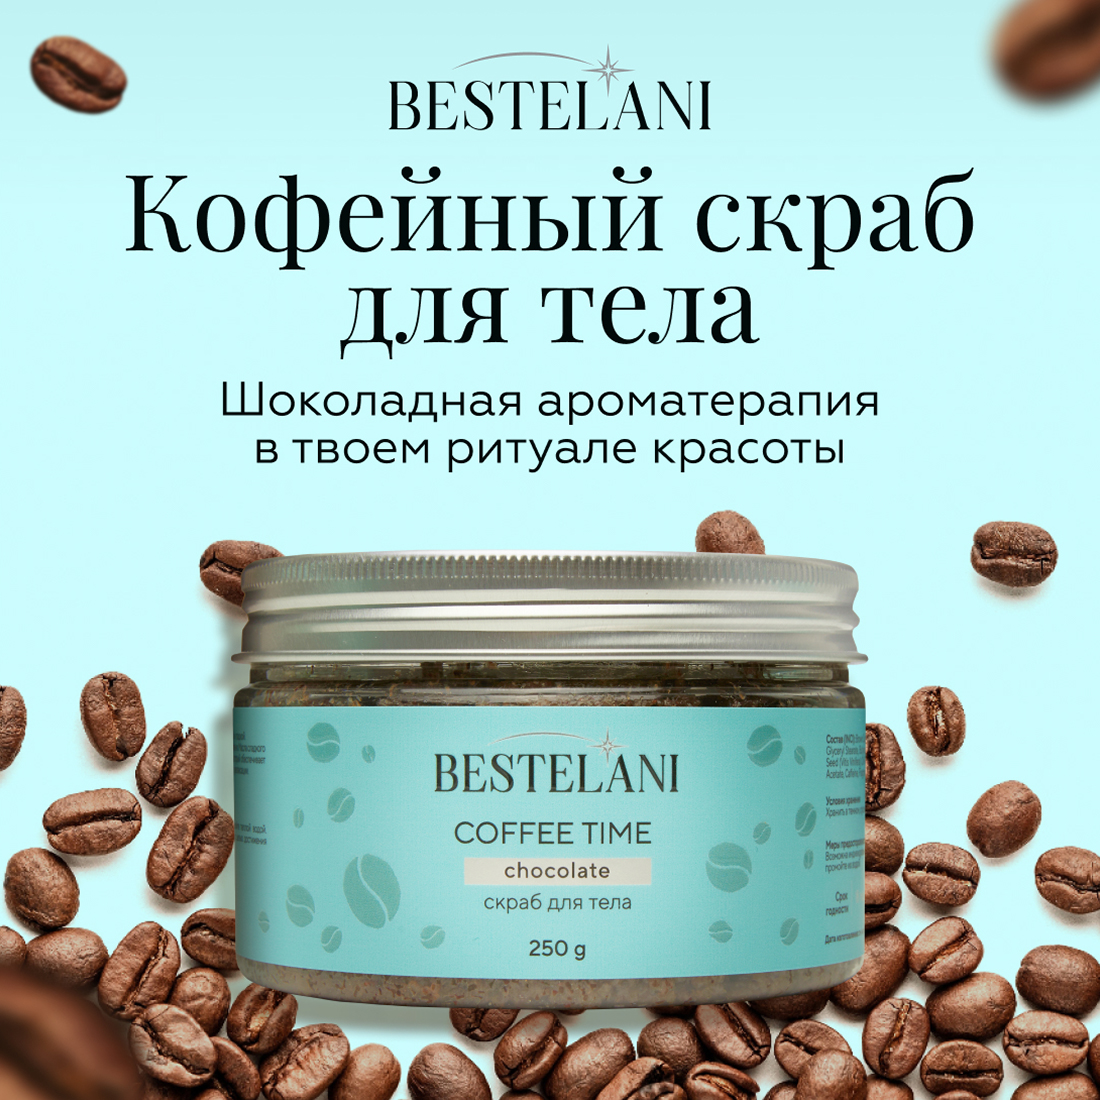 Скраб для тела Bestelani Coffee time 250 г time to choose magic солевой скраб для тела с экстрактом куркумы и маслом ши 450 0